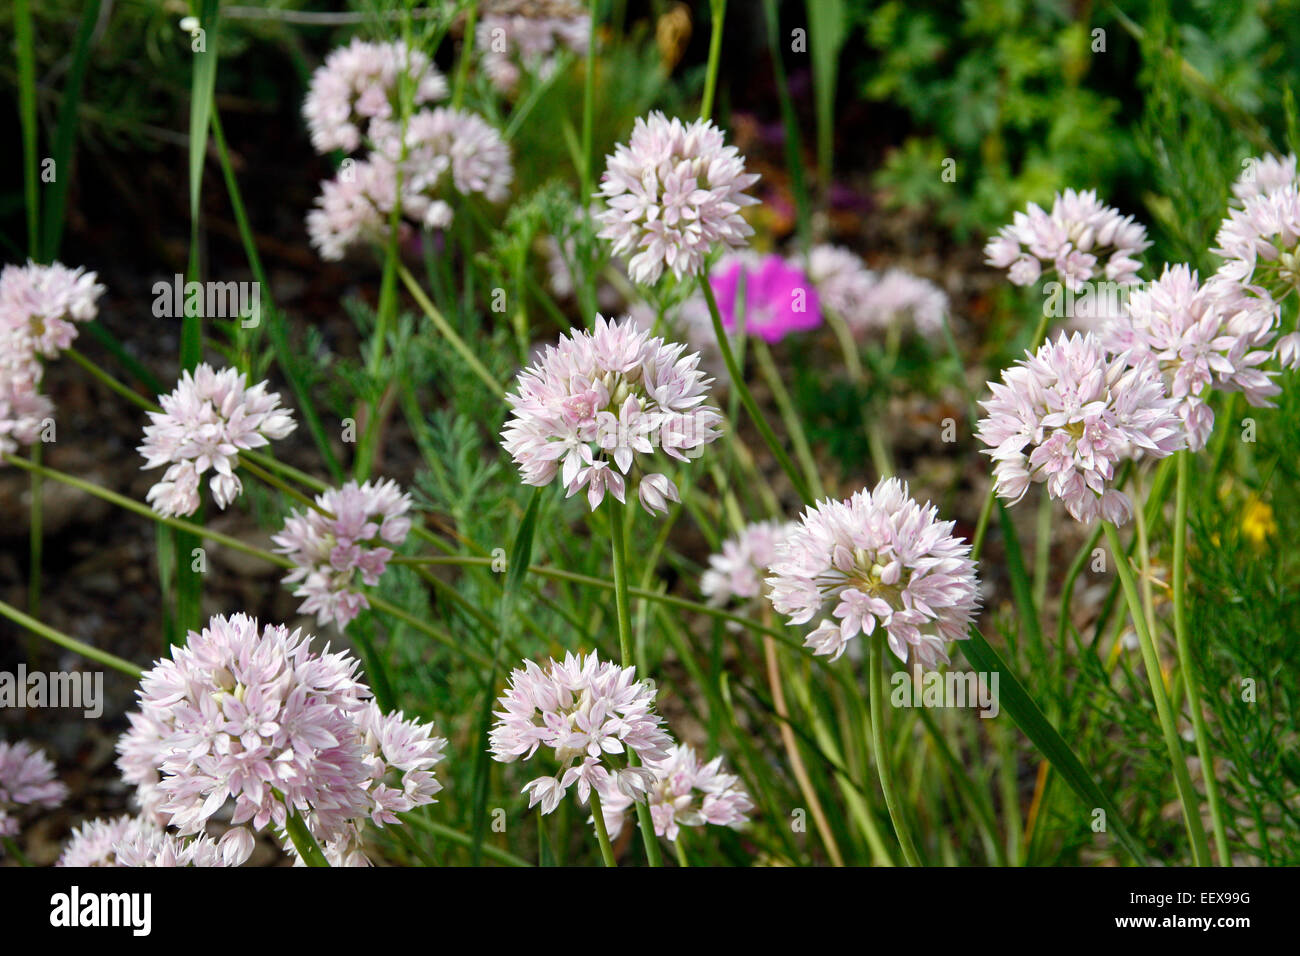 Allium senescens ssp glaucum Stock Photo